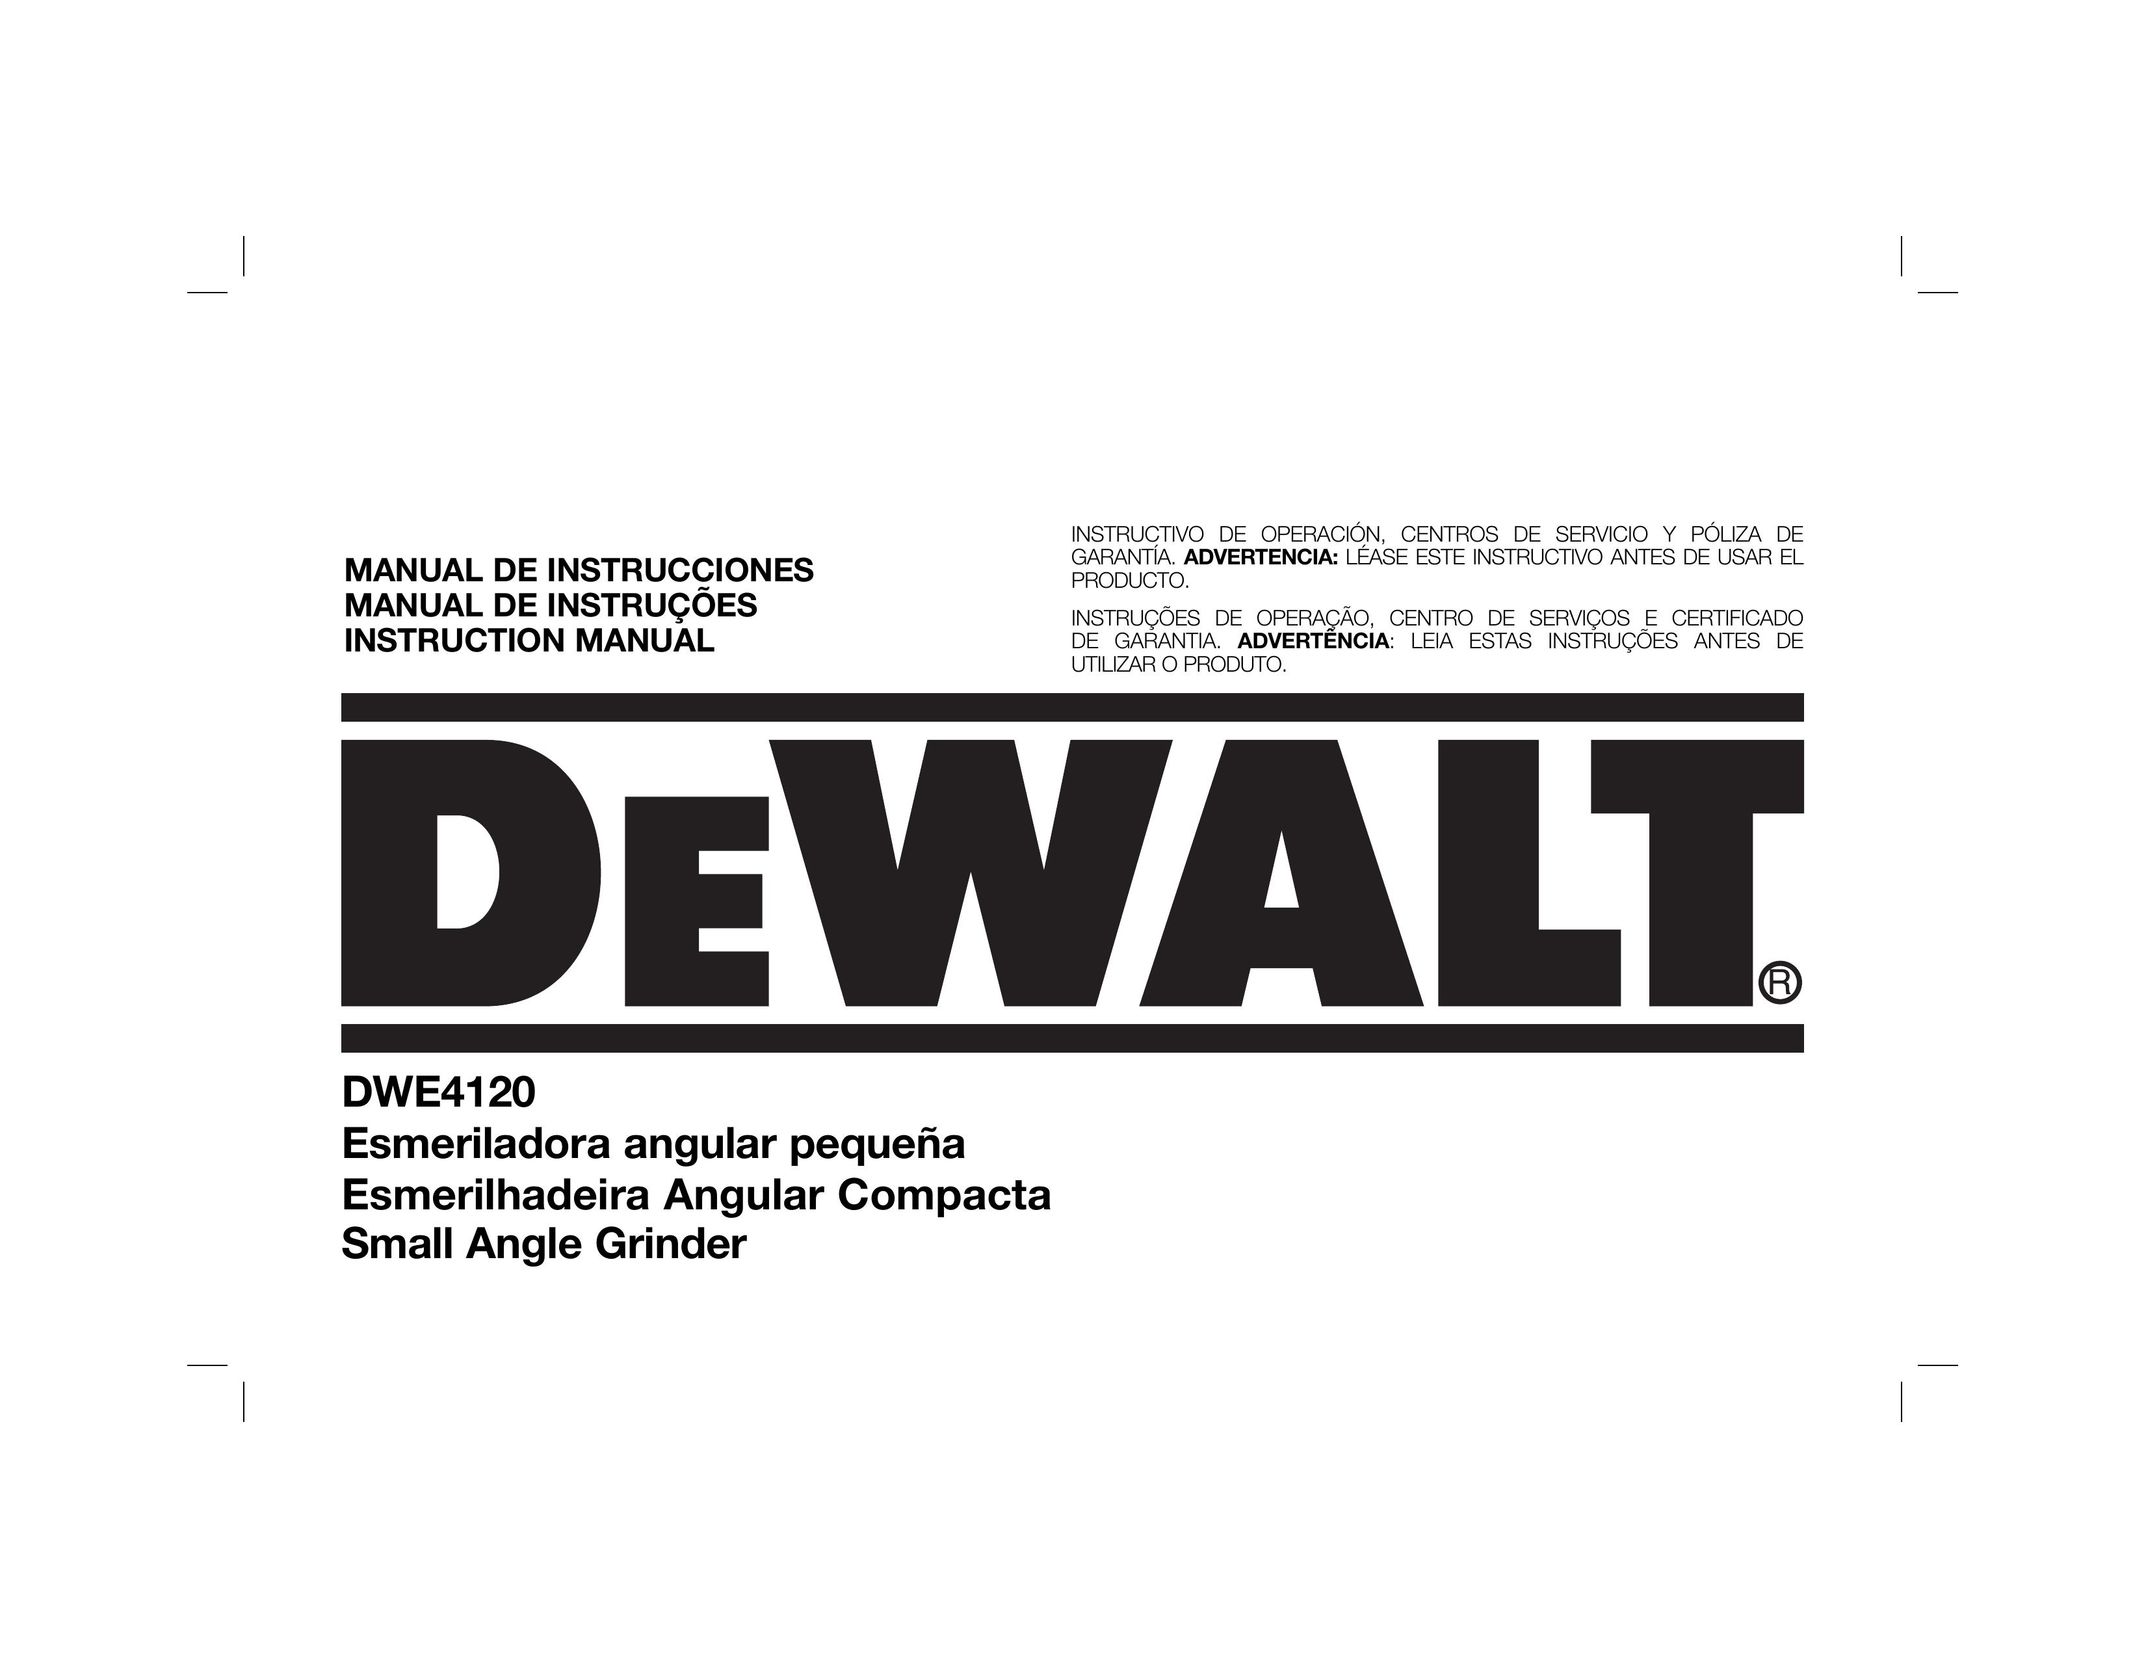 DeWalt DWE4120 Grinder User Manual